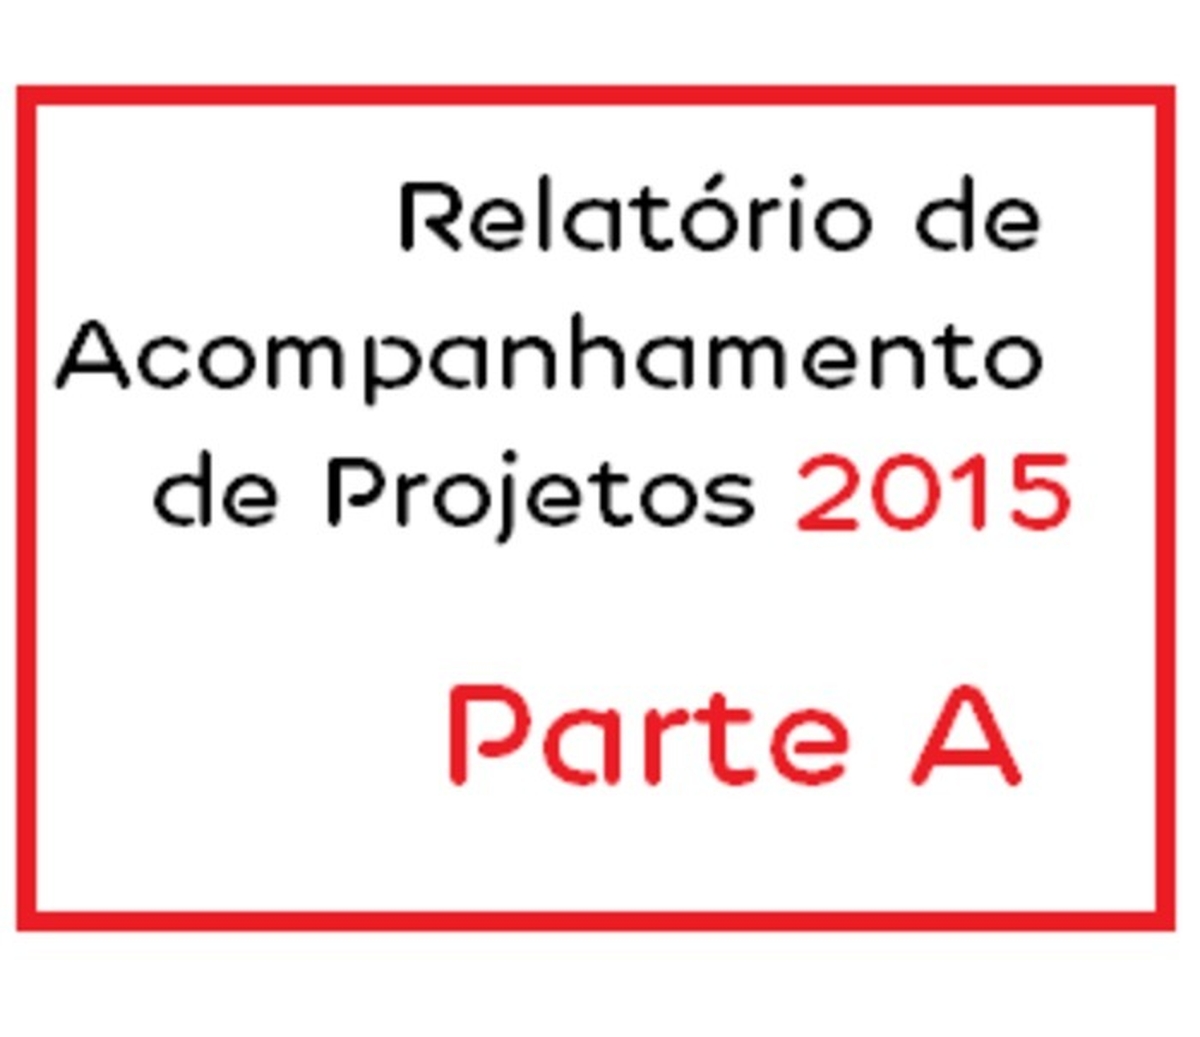 Parte A - Relatório de Acompanhamento de Projetos 2015